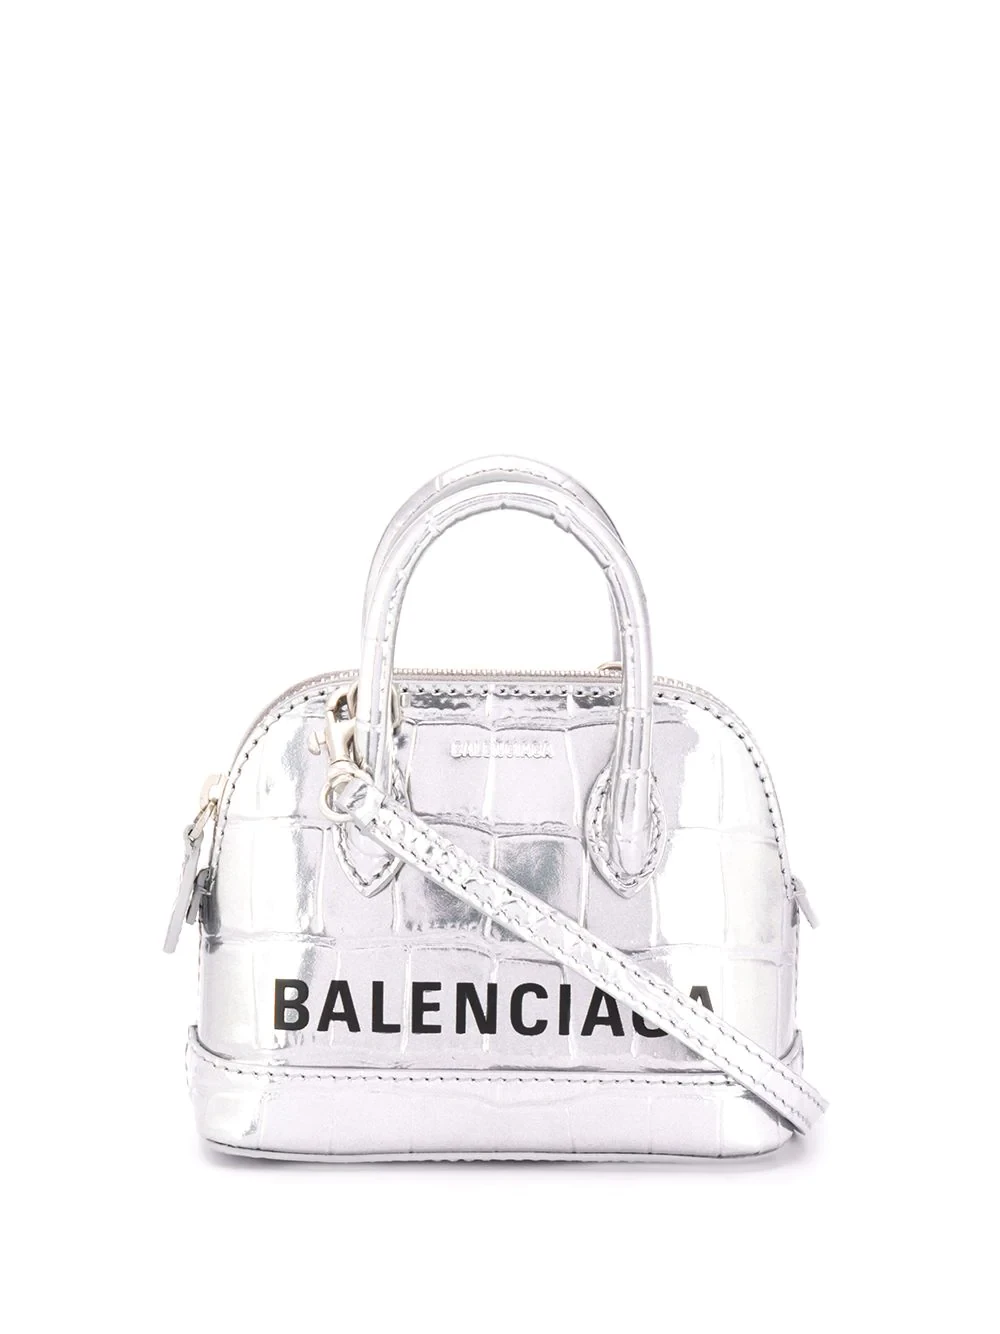 Balenciaga top handle Ville bag